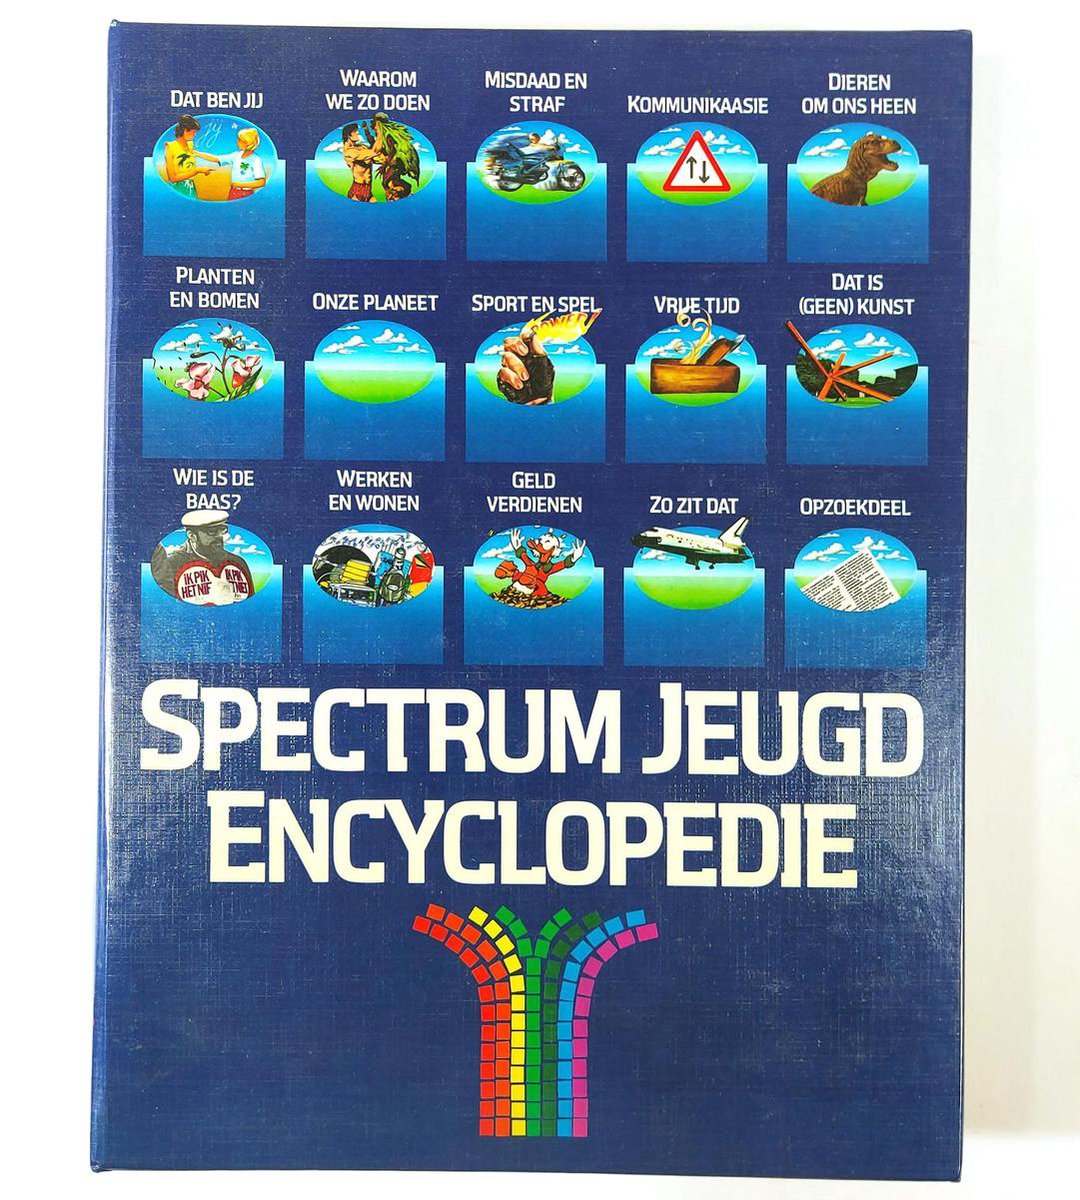 Spectrum jeud encyclopedie cpl - 